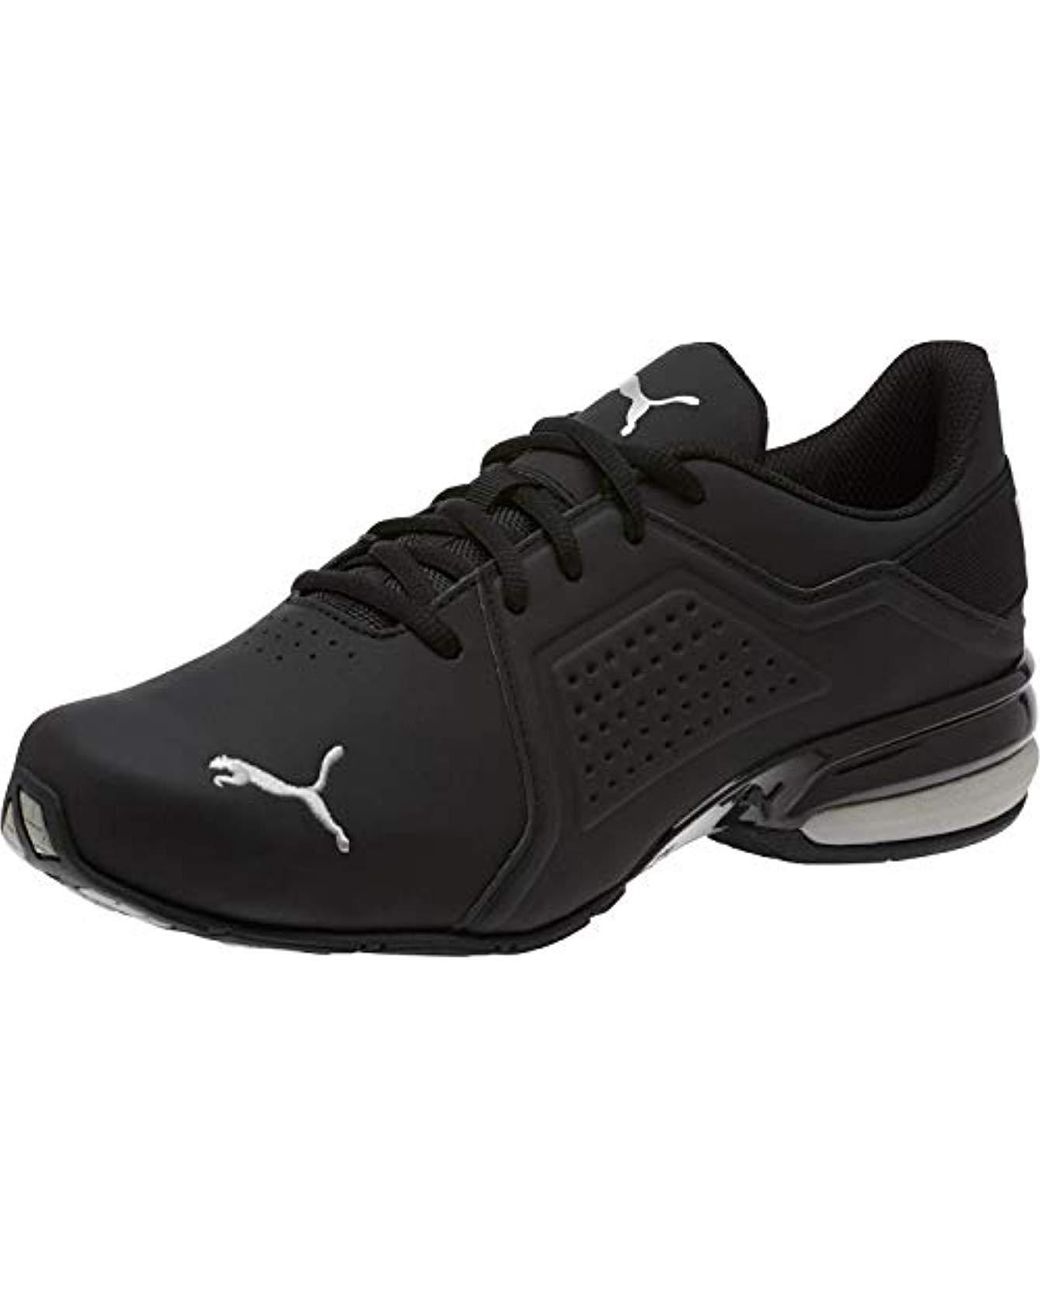 PUMA Viz Runner Sneaker in Black for Men - Save 9% - Lyst